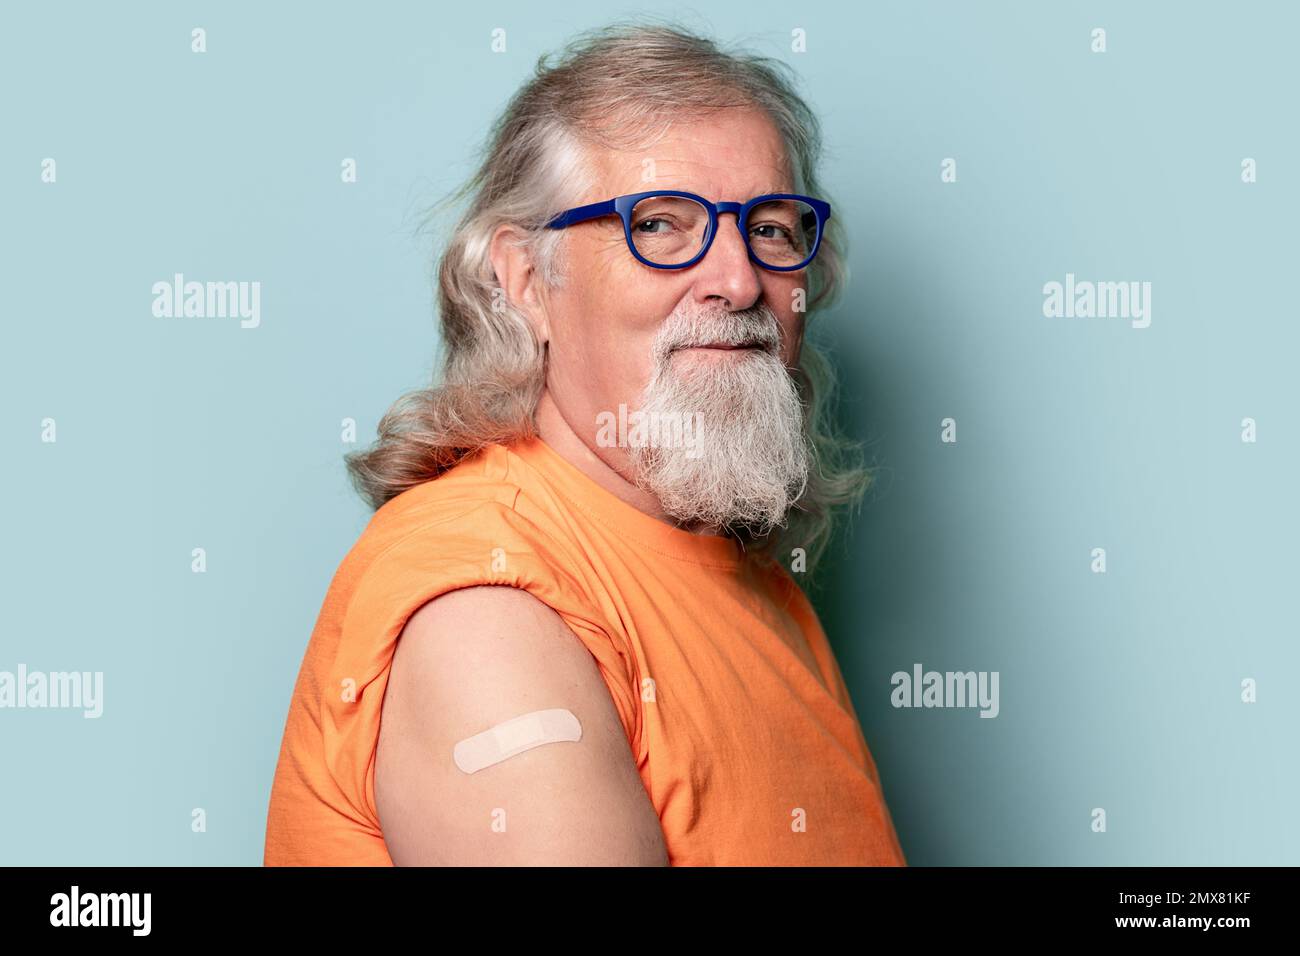 Uomo anziano in occhiali e t-shirt arancione con maniche arrotolate che mostrano bendaggio e guardare lontano su sfondo blu Foto Stock